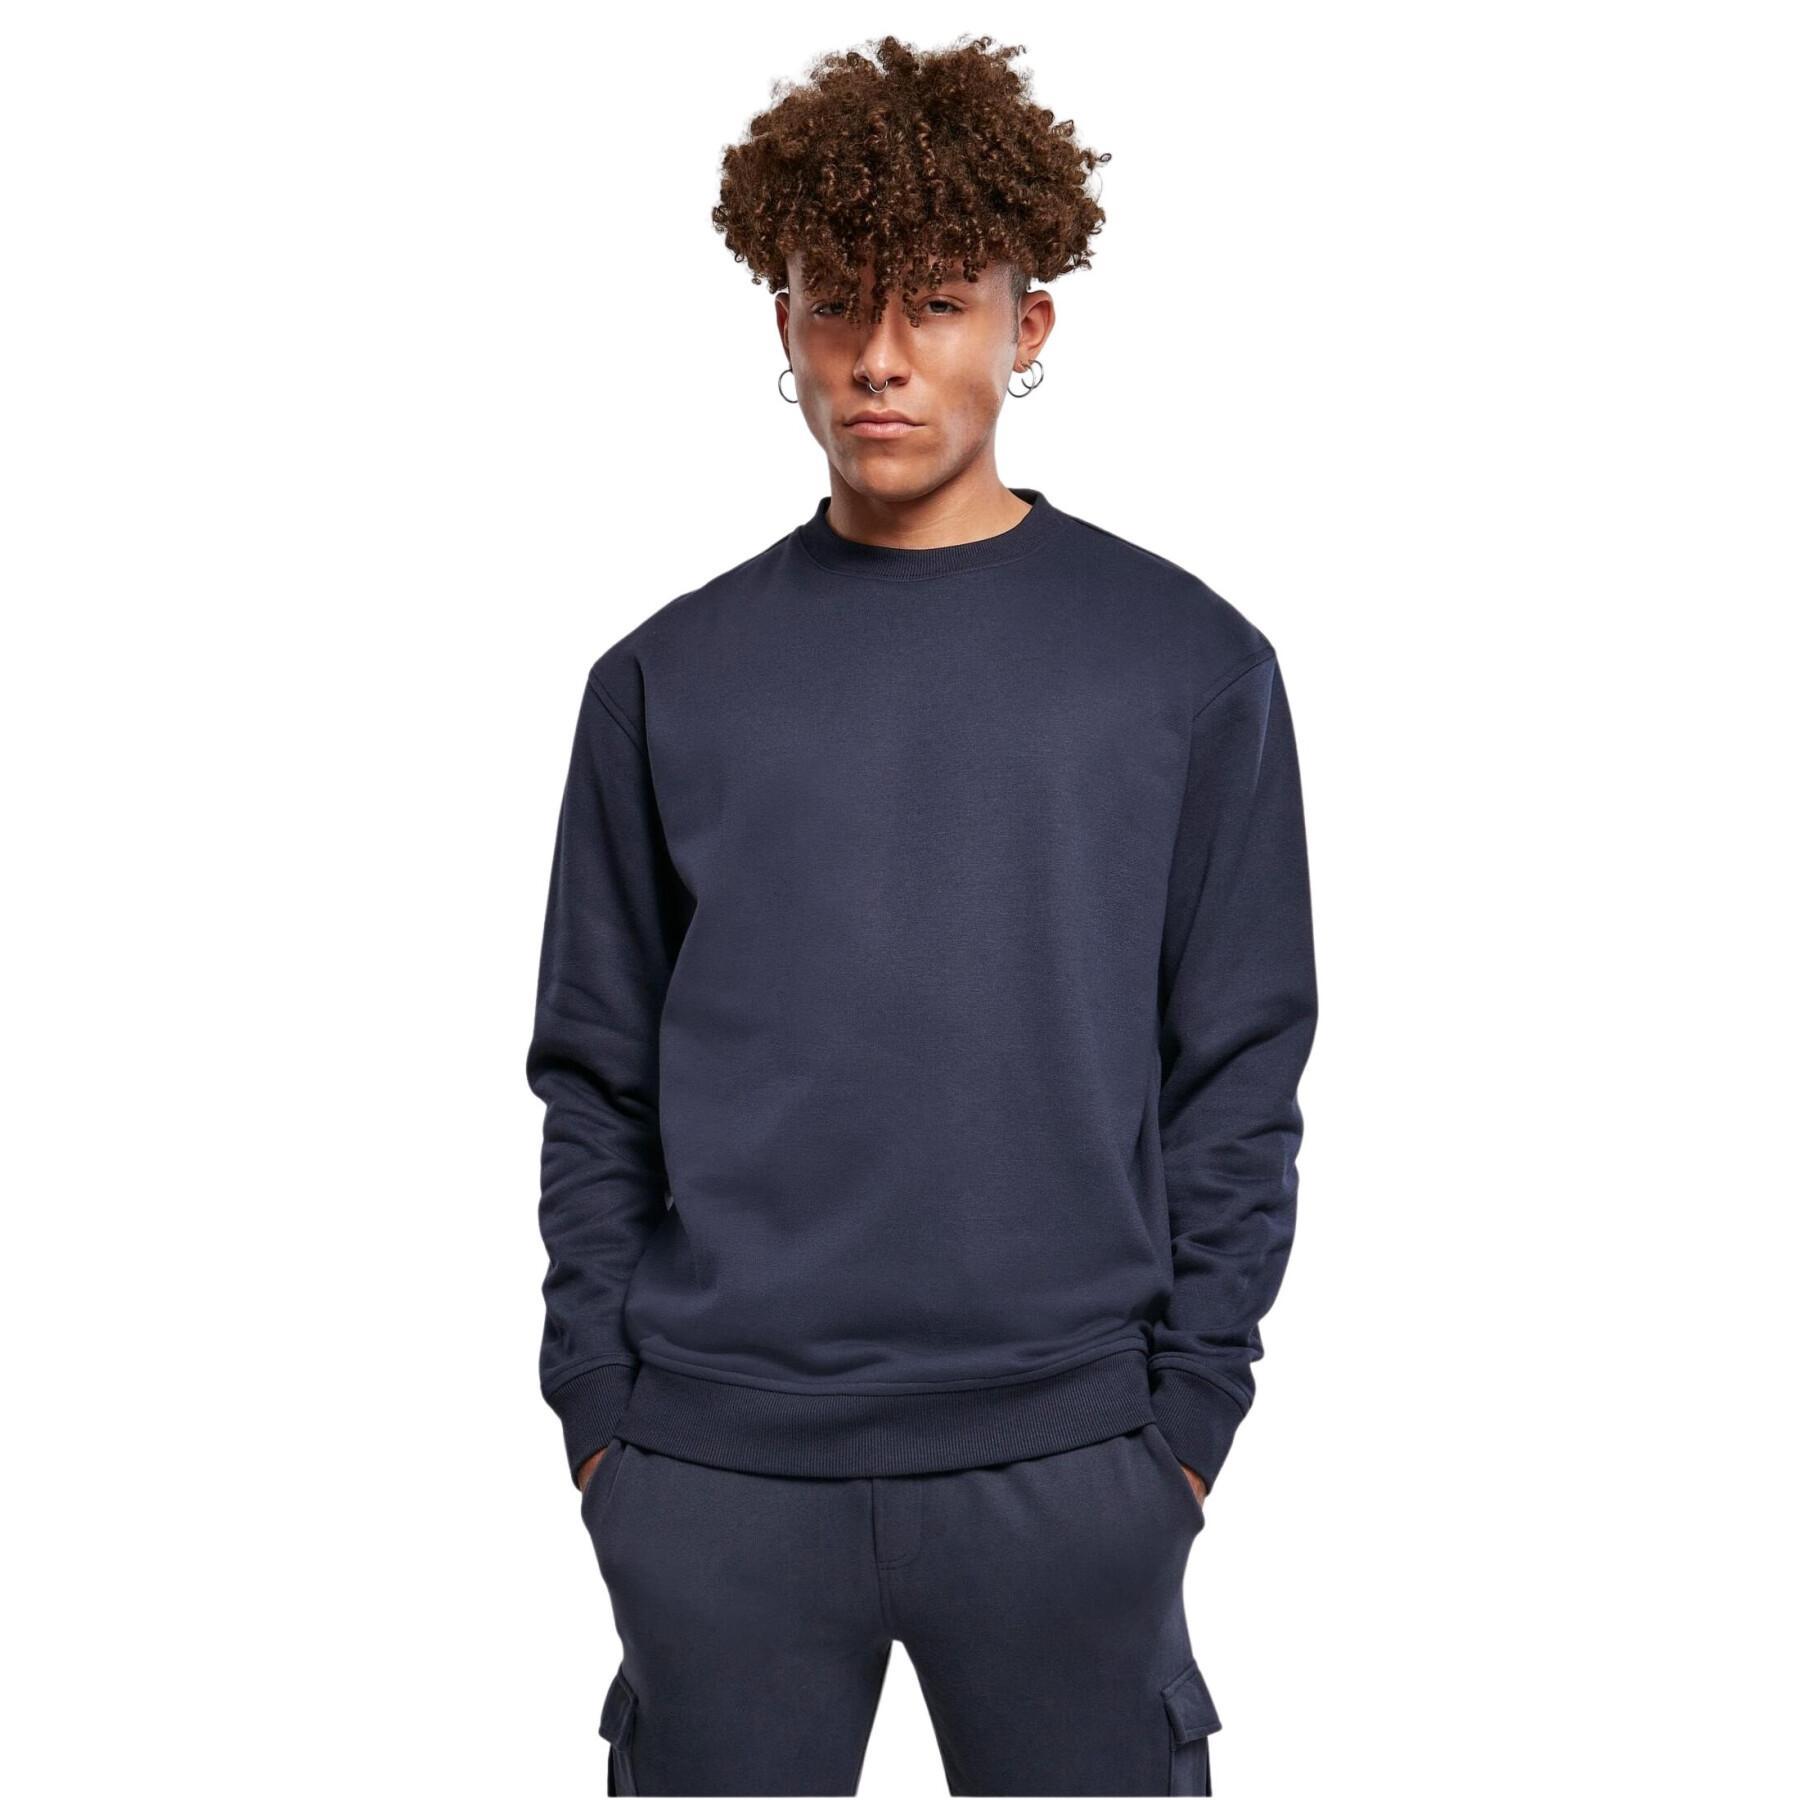 Sweatshirt round neck large sizes Urban Classics